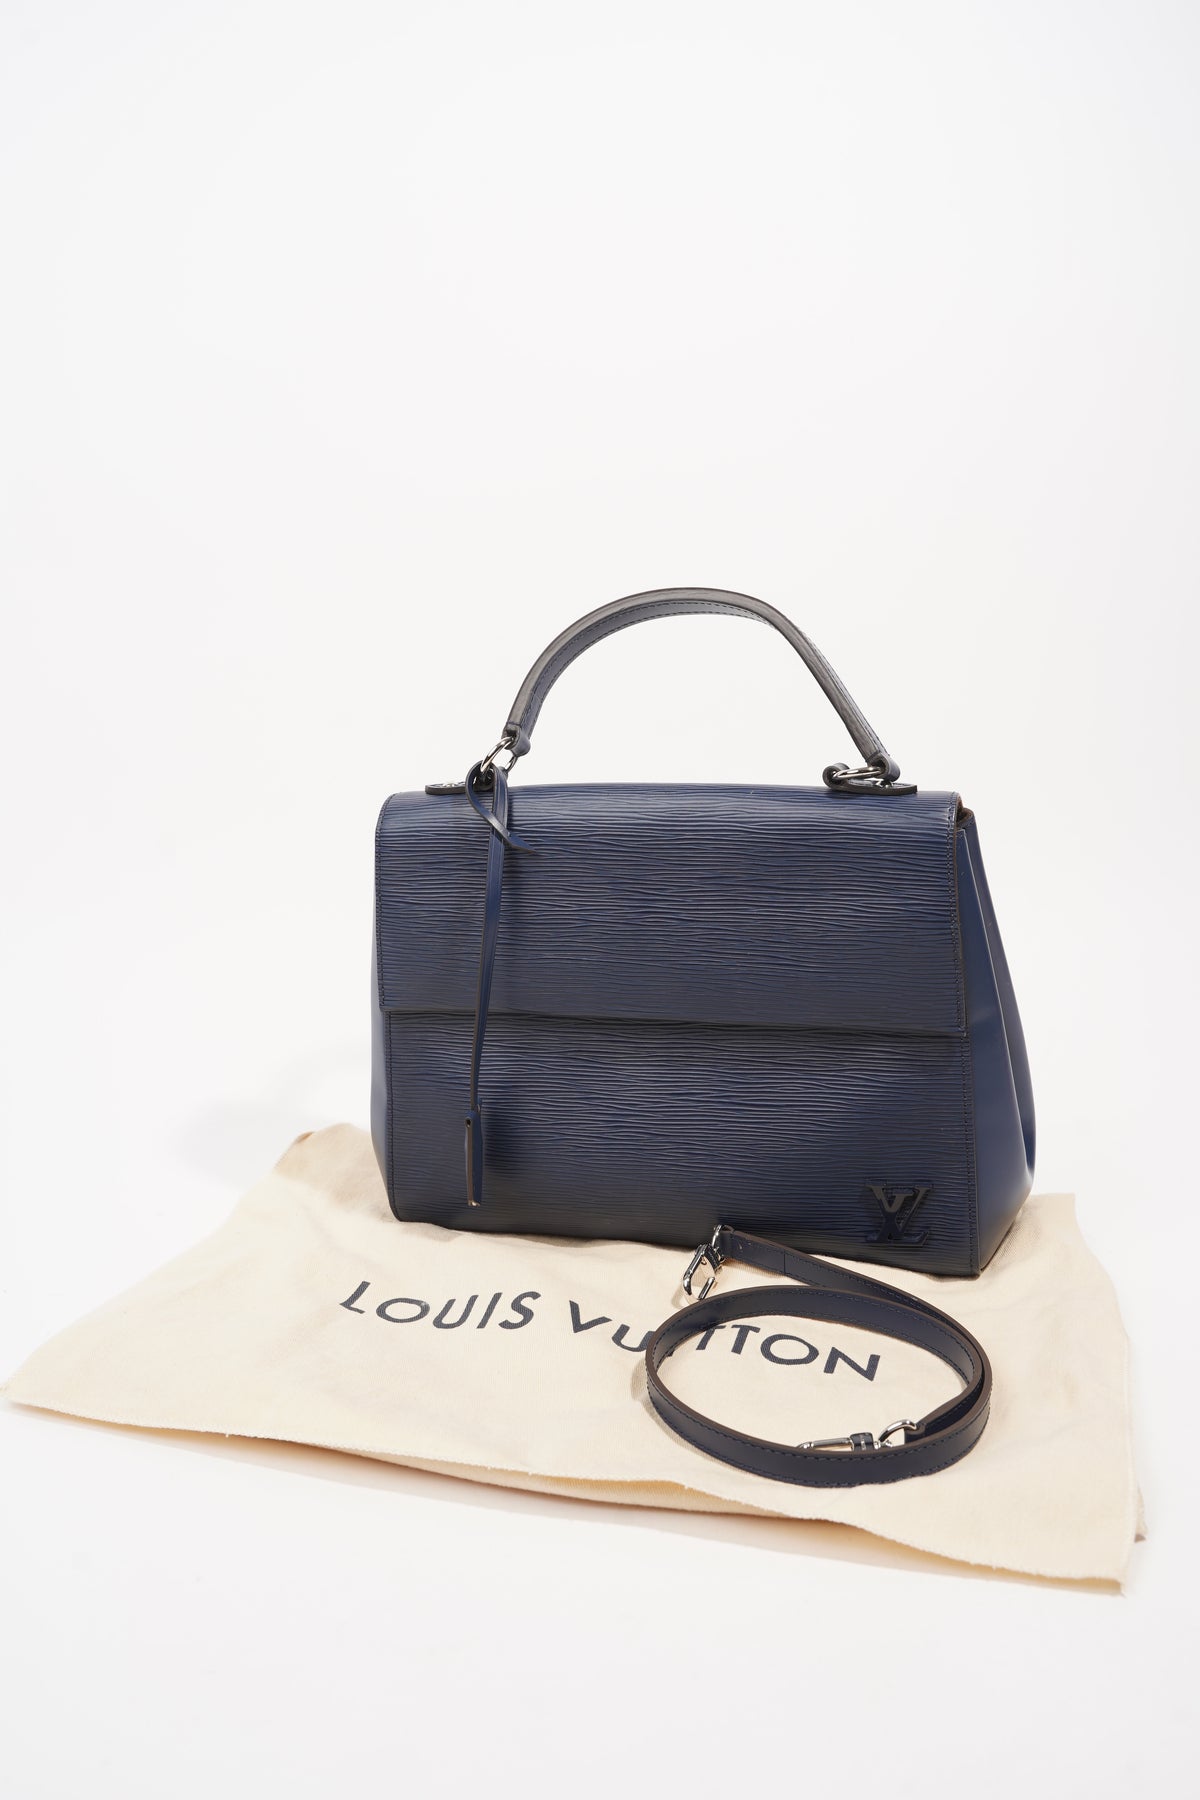 Louis Vuitton Black Epi Leather Cluny MM Bag Louis Vuitton